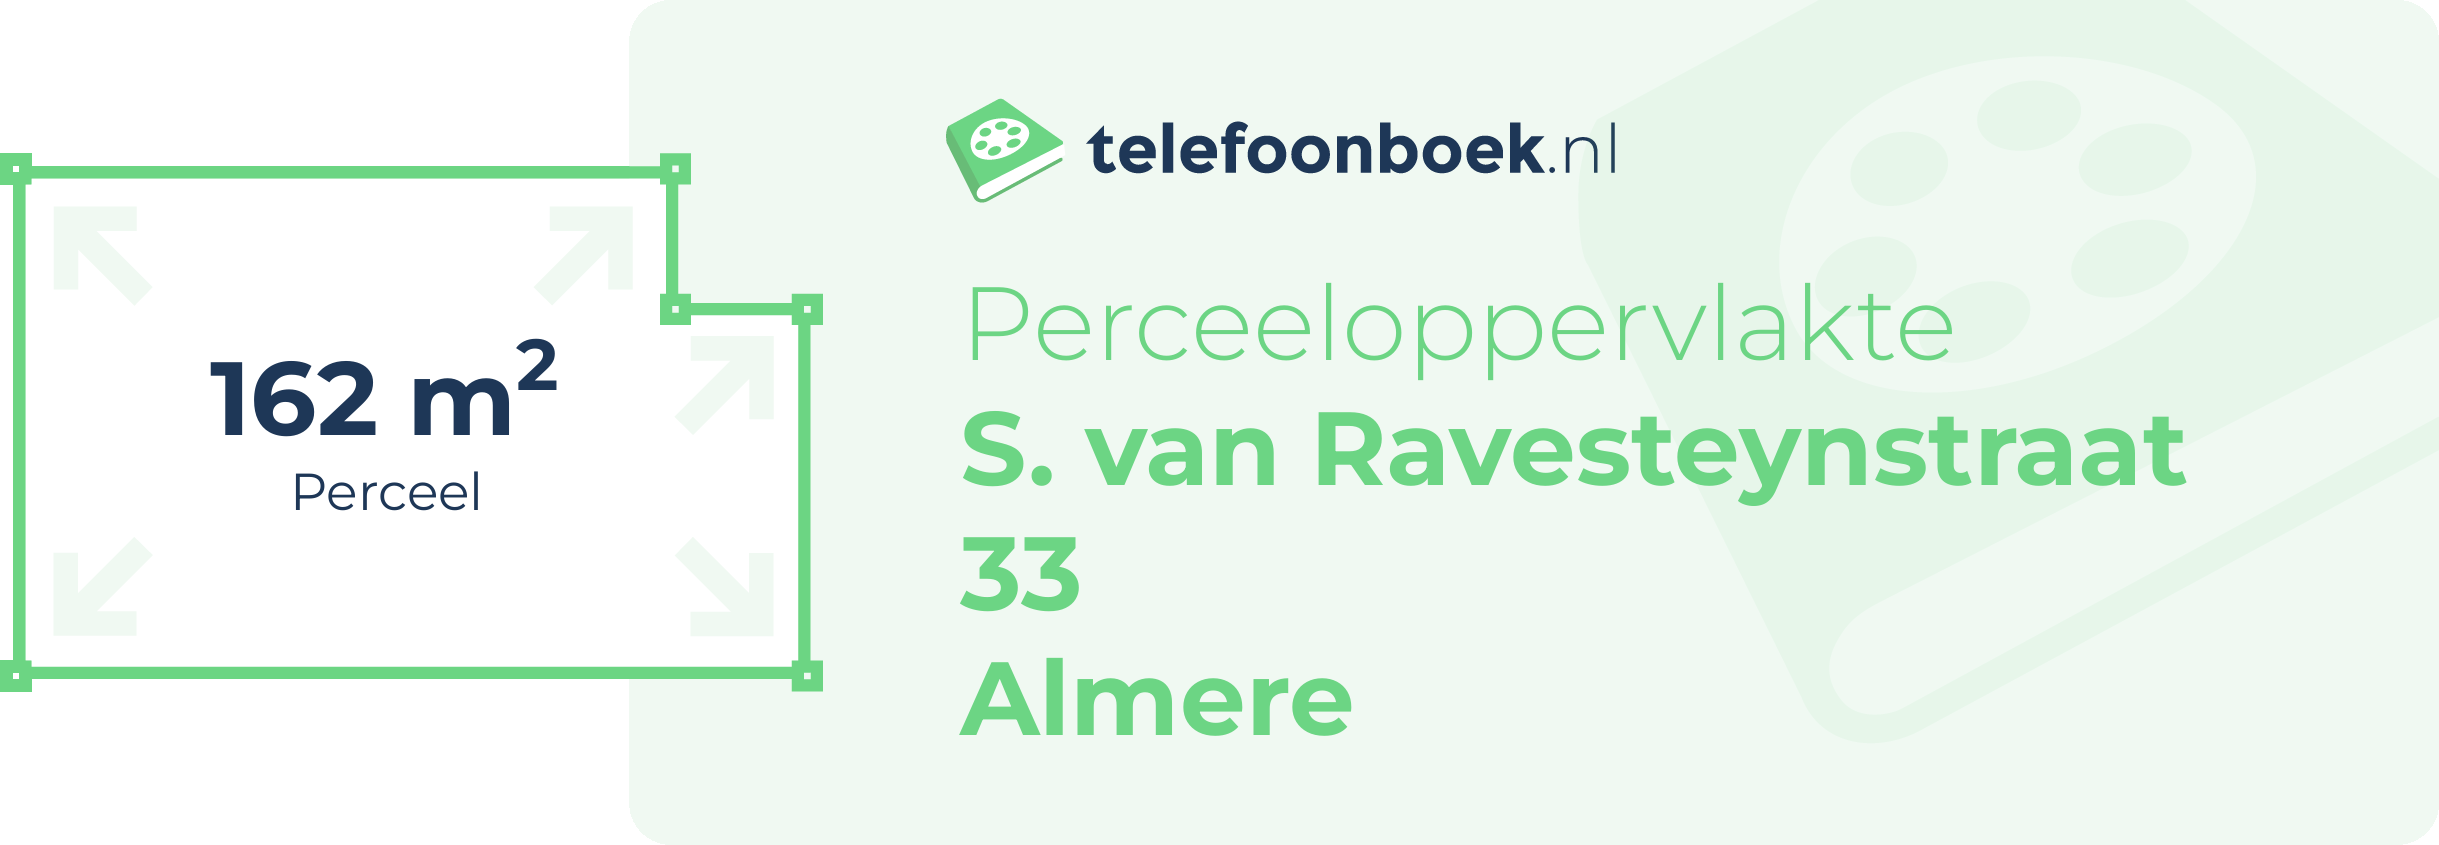 Perceeloppervlakte S. Van Ravesteynstraat 33 Almere